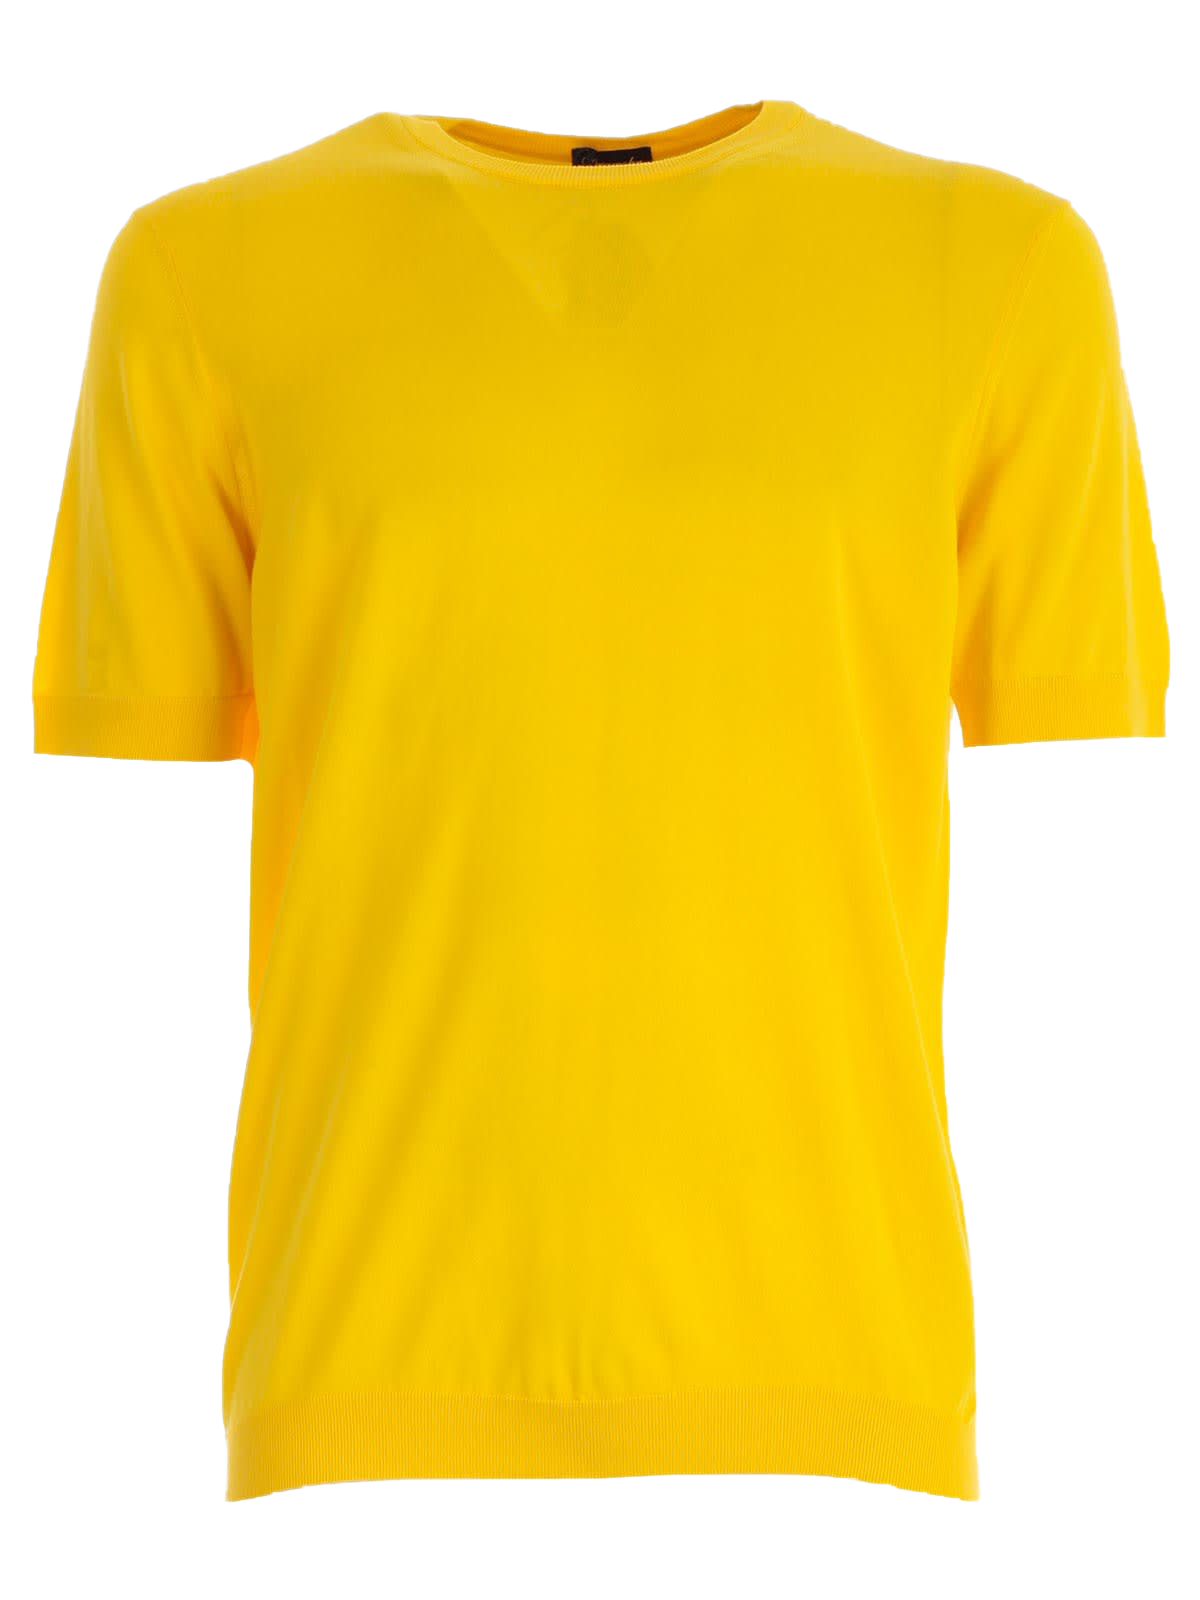 Plain Yellow T-Shirt PNG Image | PNG Arts